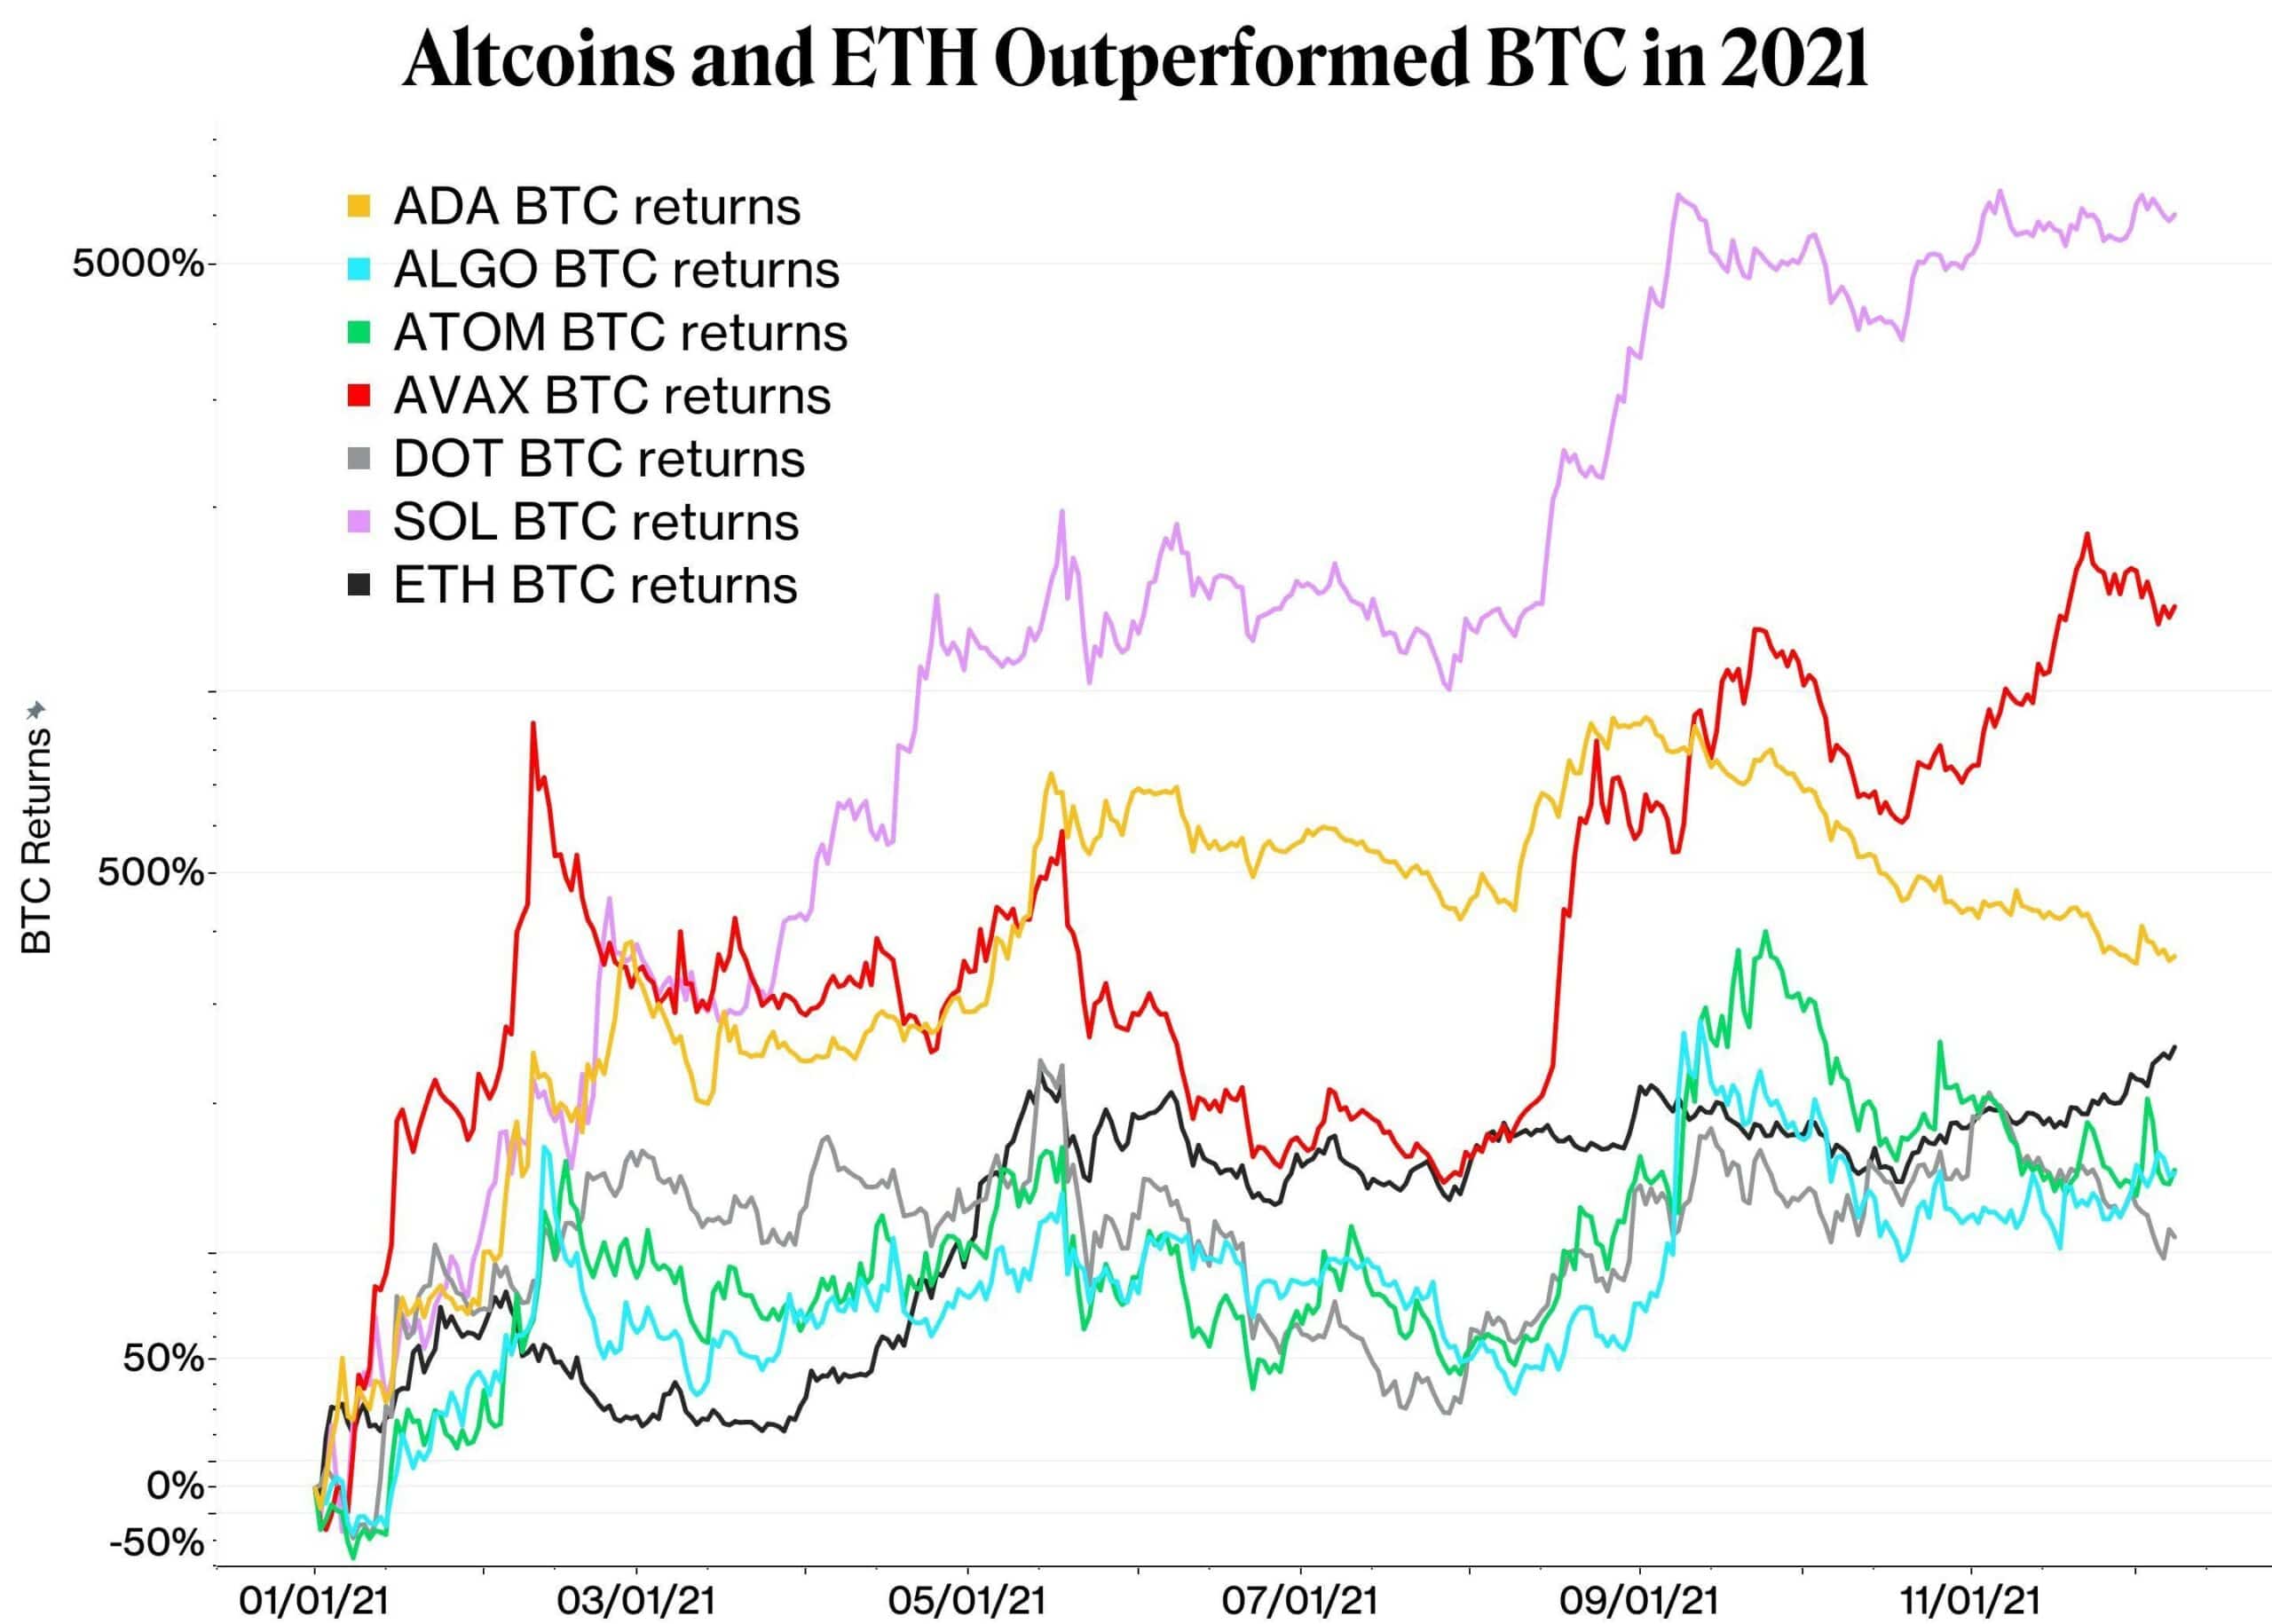 Rendements des Altcoins et de l'Ether depuis le début de l'année, exprimés en bitcoin (échelle logarithmique)